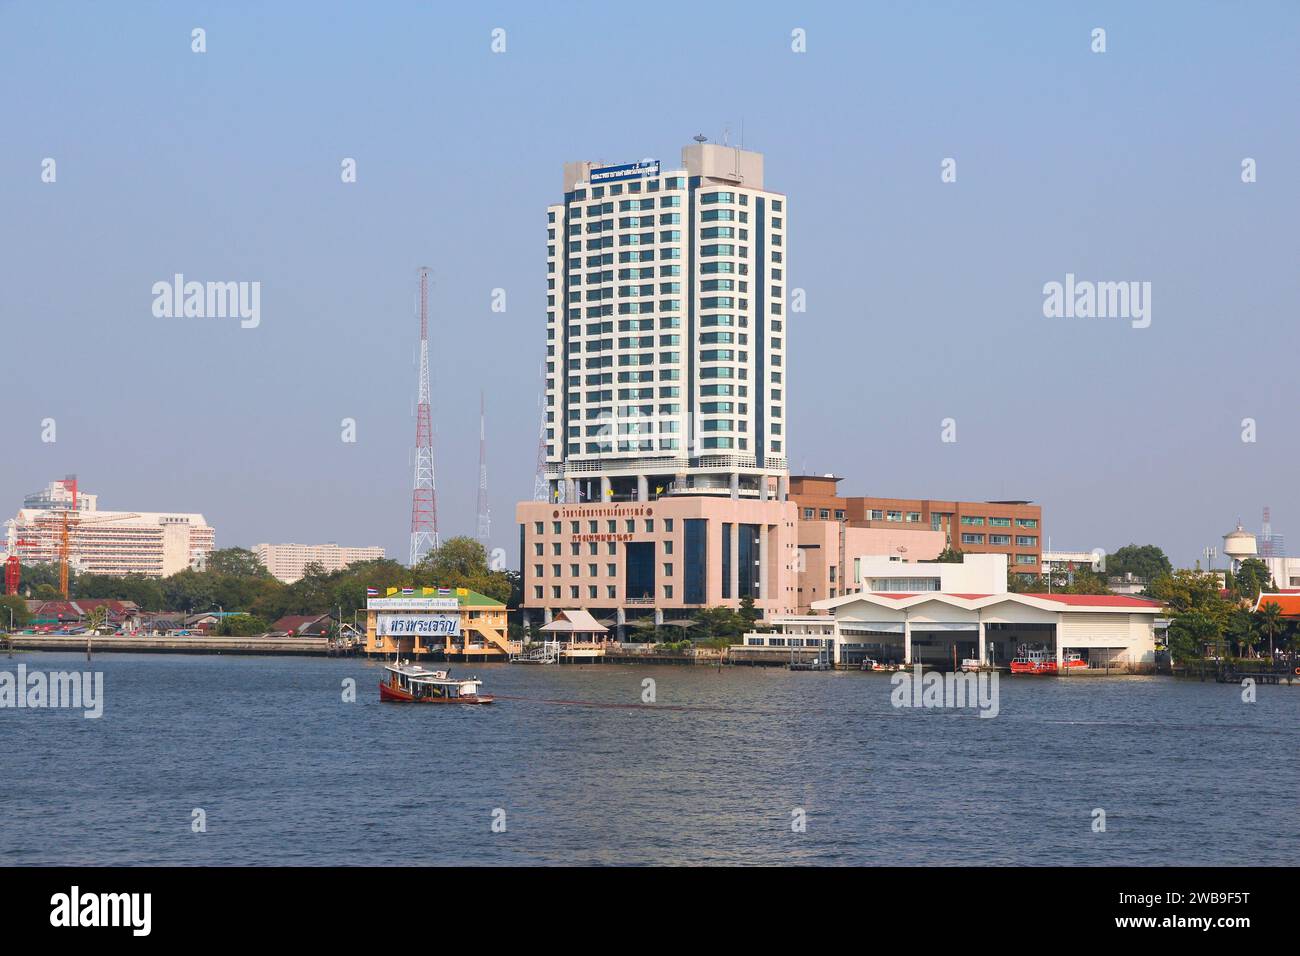 BANGKOK, THAILAND - 22. DEZEMBER 2013: Kuakarun Fakultät für Krankenpflege an der Navamindradhiraj Universität in Bangkok. Vom Fluss Chao Phraya aus gesehen. Stockfoto